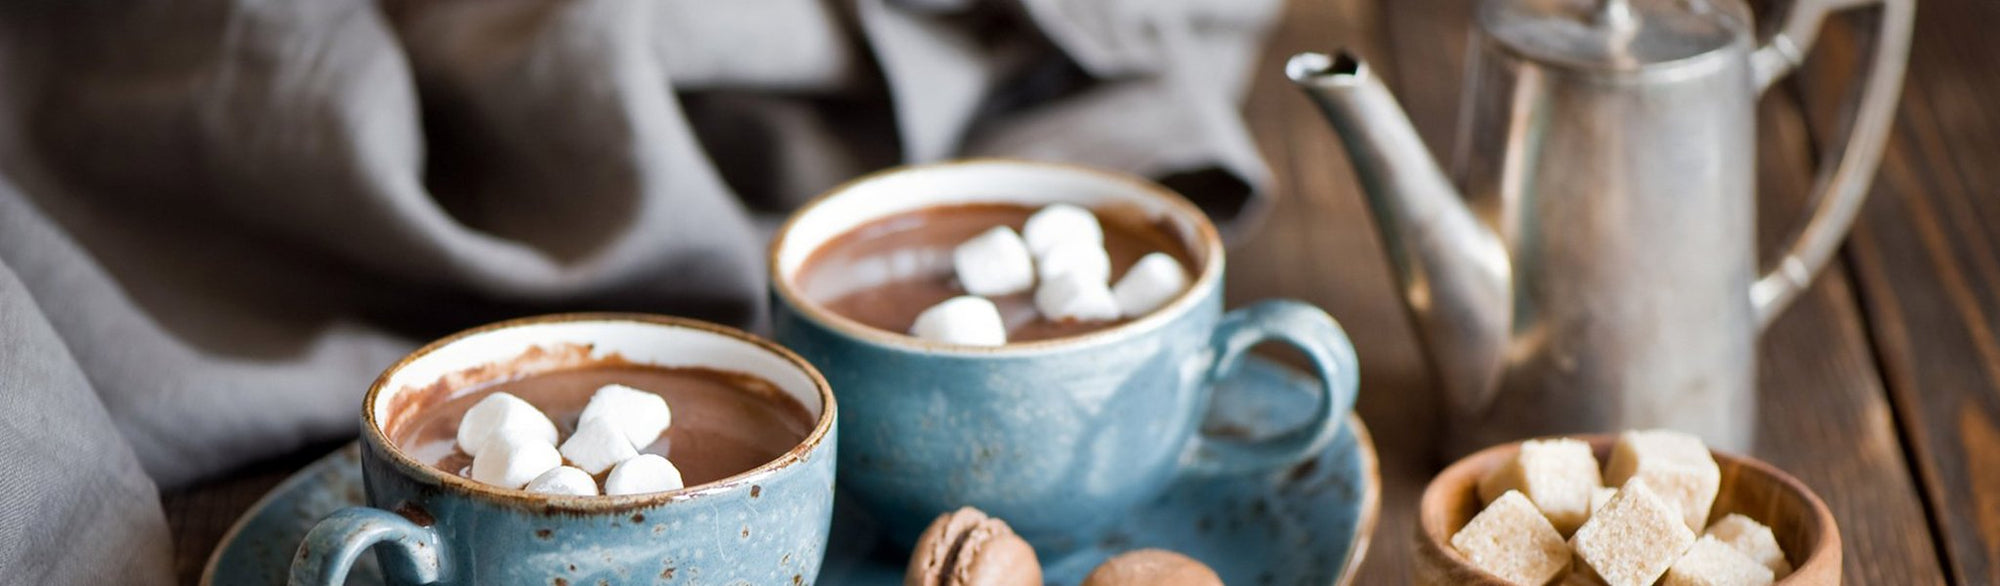 Boite 10 chocolats – M.& Mme Chocolat